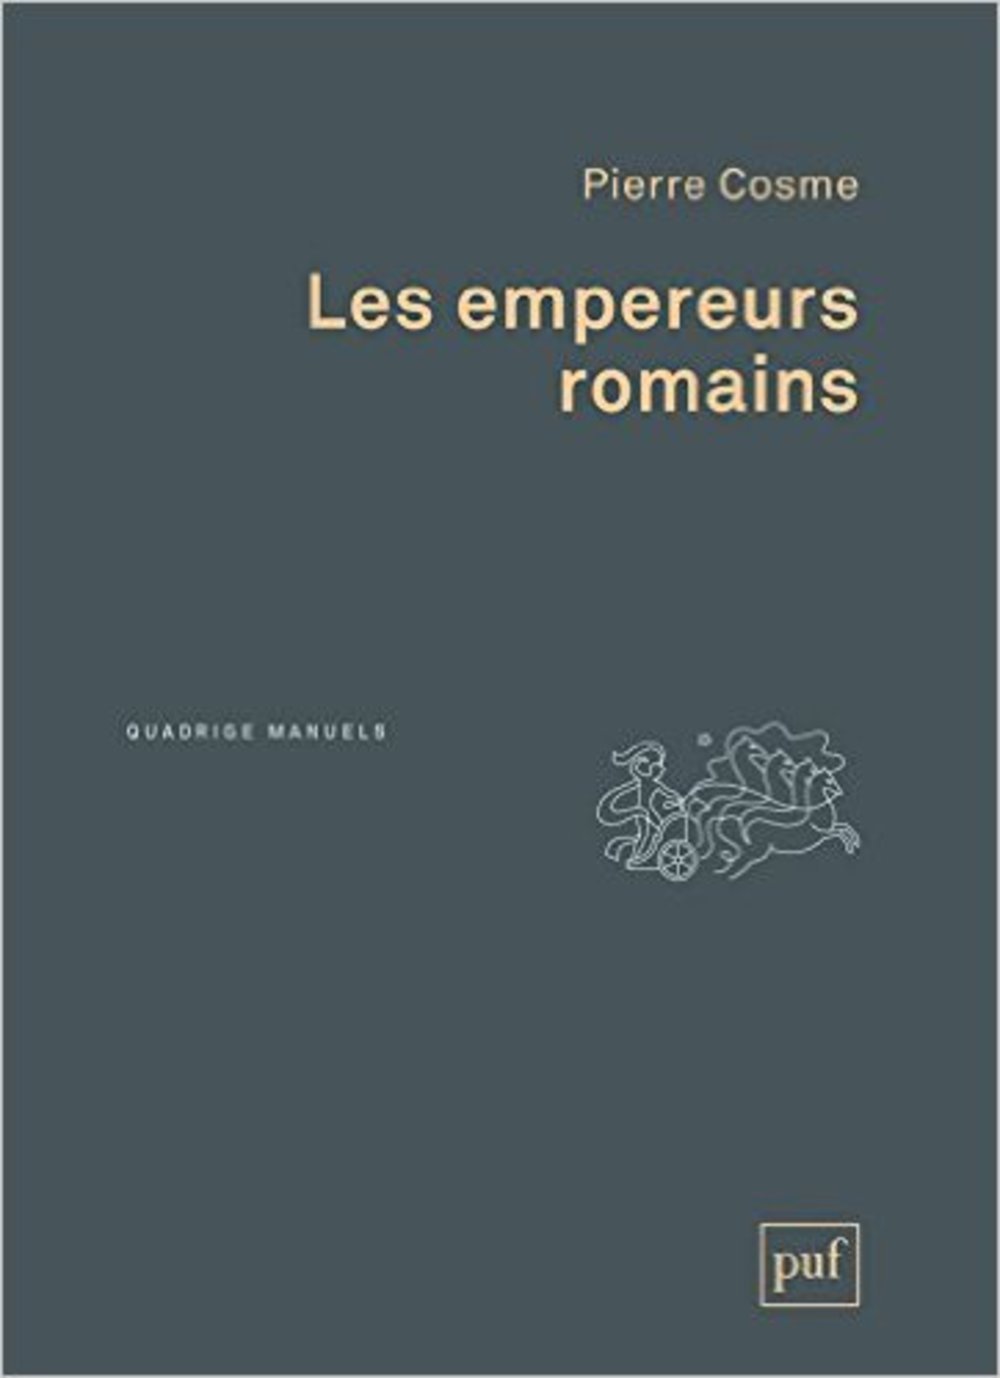 Les empereurs romains, 2016, 272 p.